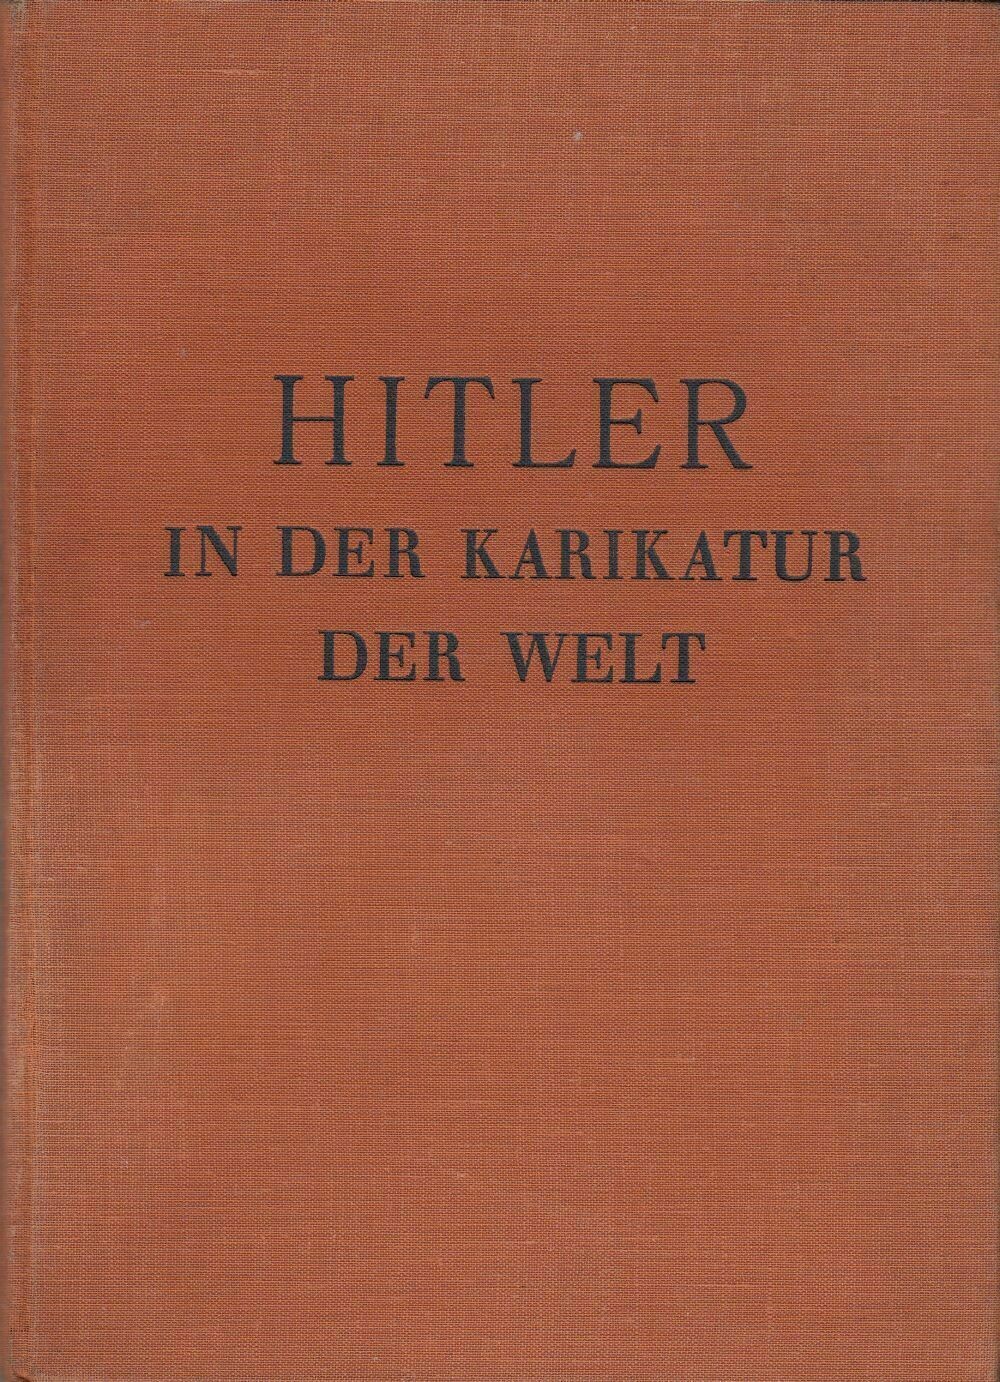 Hanfstaengl: Hitler in der Karikatur der Welt - Ganzleinenausgabe